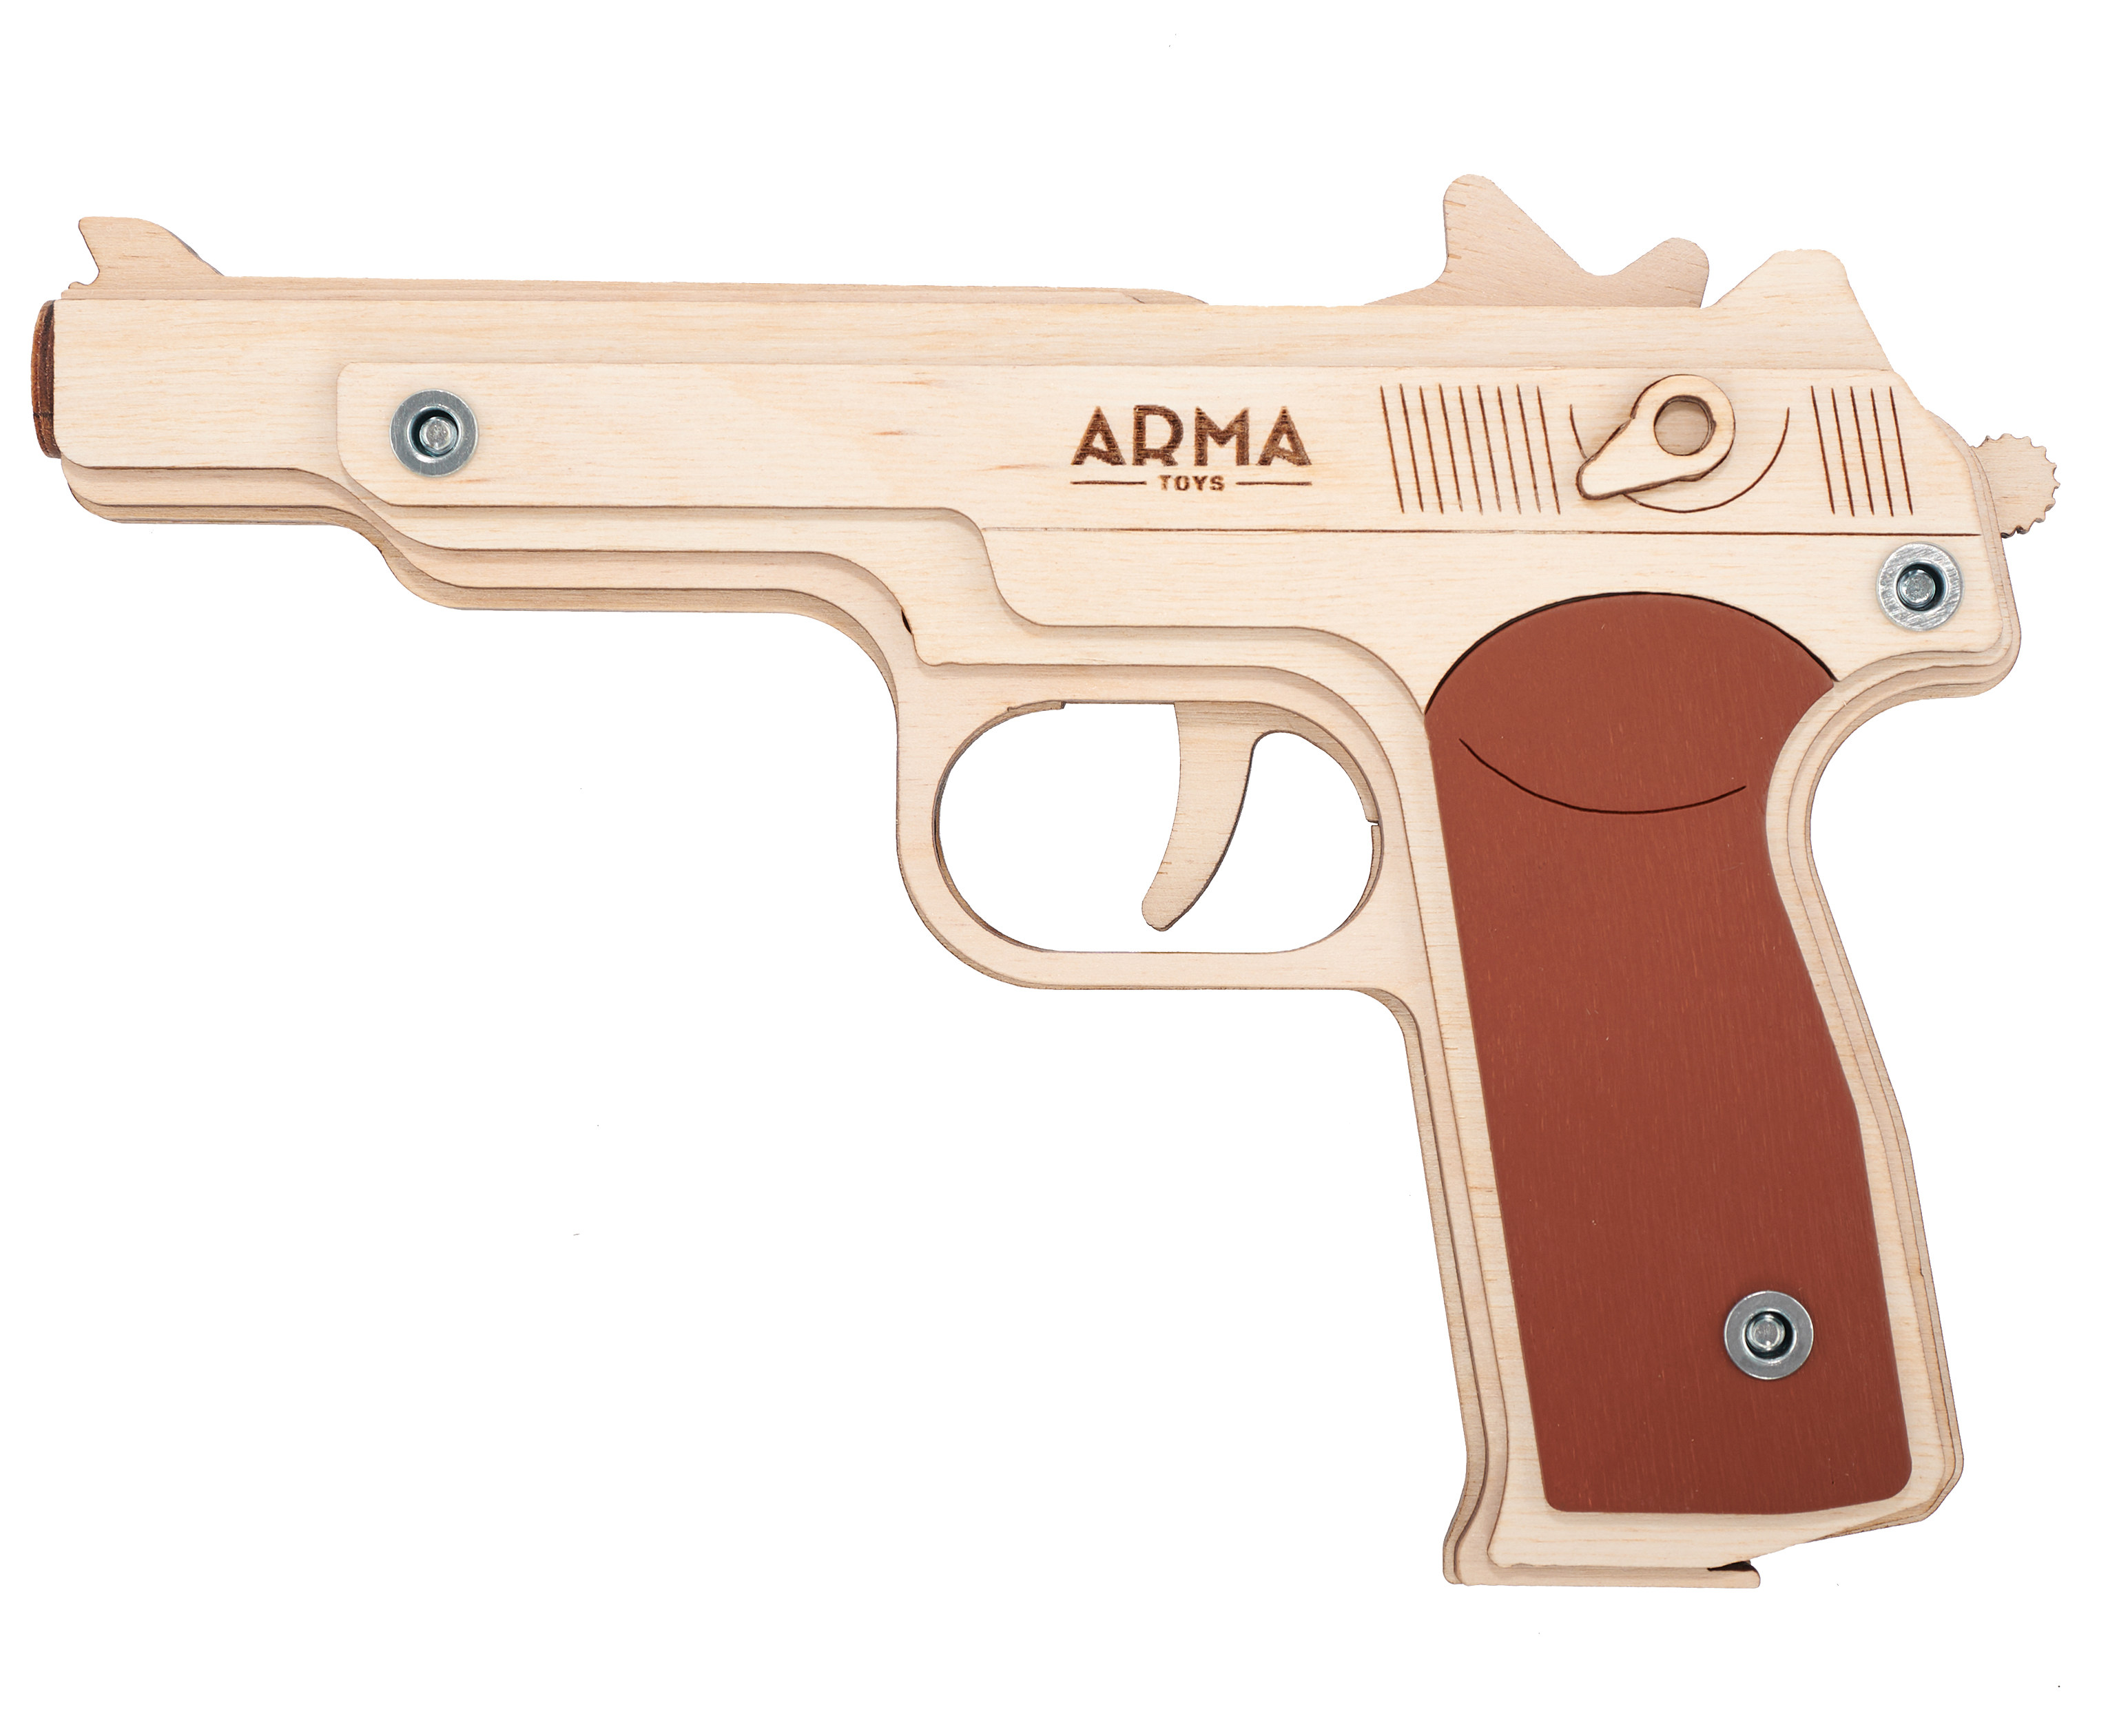 Резинкострел игрушечный Arma toys пистолет АПС макет, Стечкин, АТ009 резинкострел arma toys пистолет glock макет compact atl001